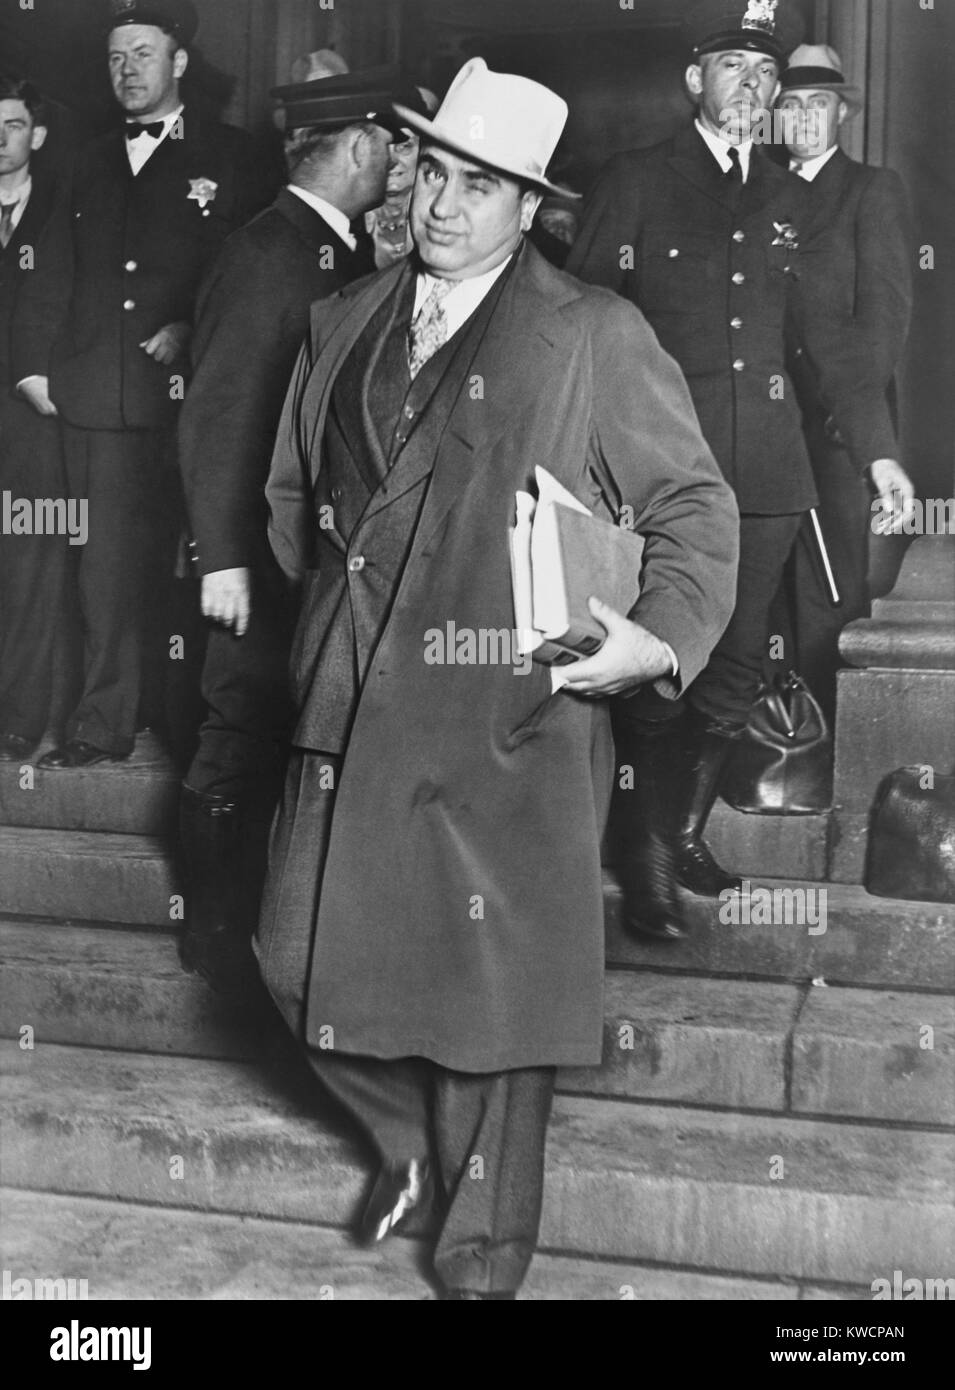 Al Capone, fait un clin d'œil à photographes, il quitte le palais fédéral de Chicago. 14 octobre, 1931. Le célèbre gangster de Chicago était en procès pour fraude fiscale. - BSLOC  2015 (1 13) Banque D'Images